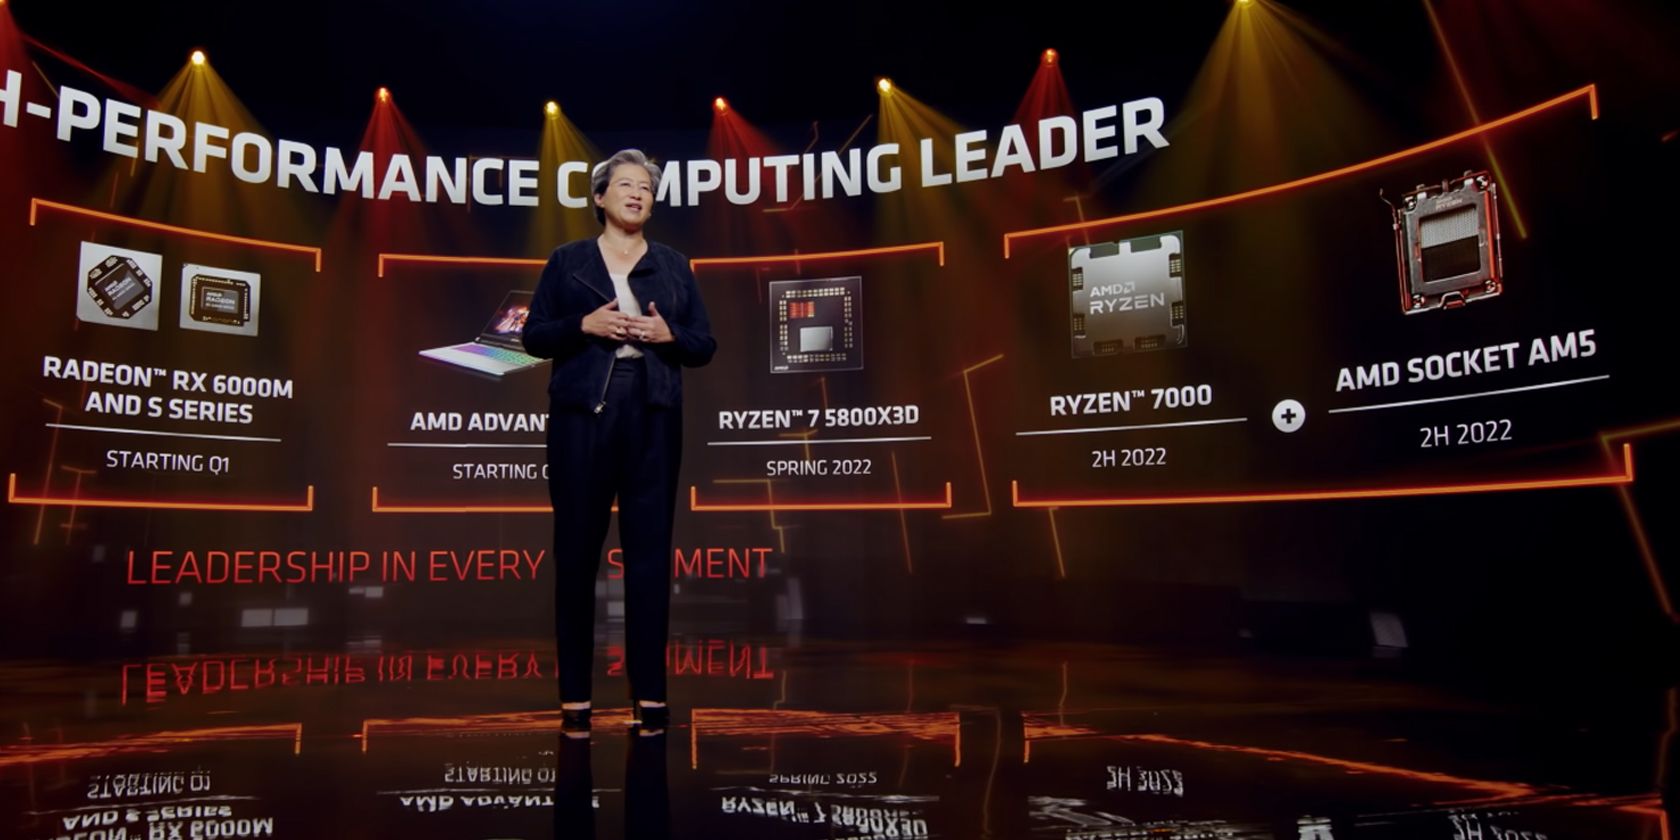 Dr. Lisa Su at CESS 2022 announcing AMD Socket AM5